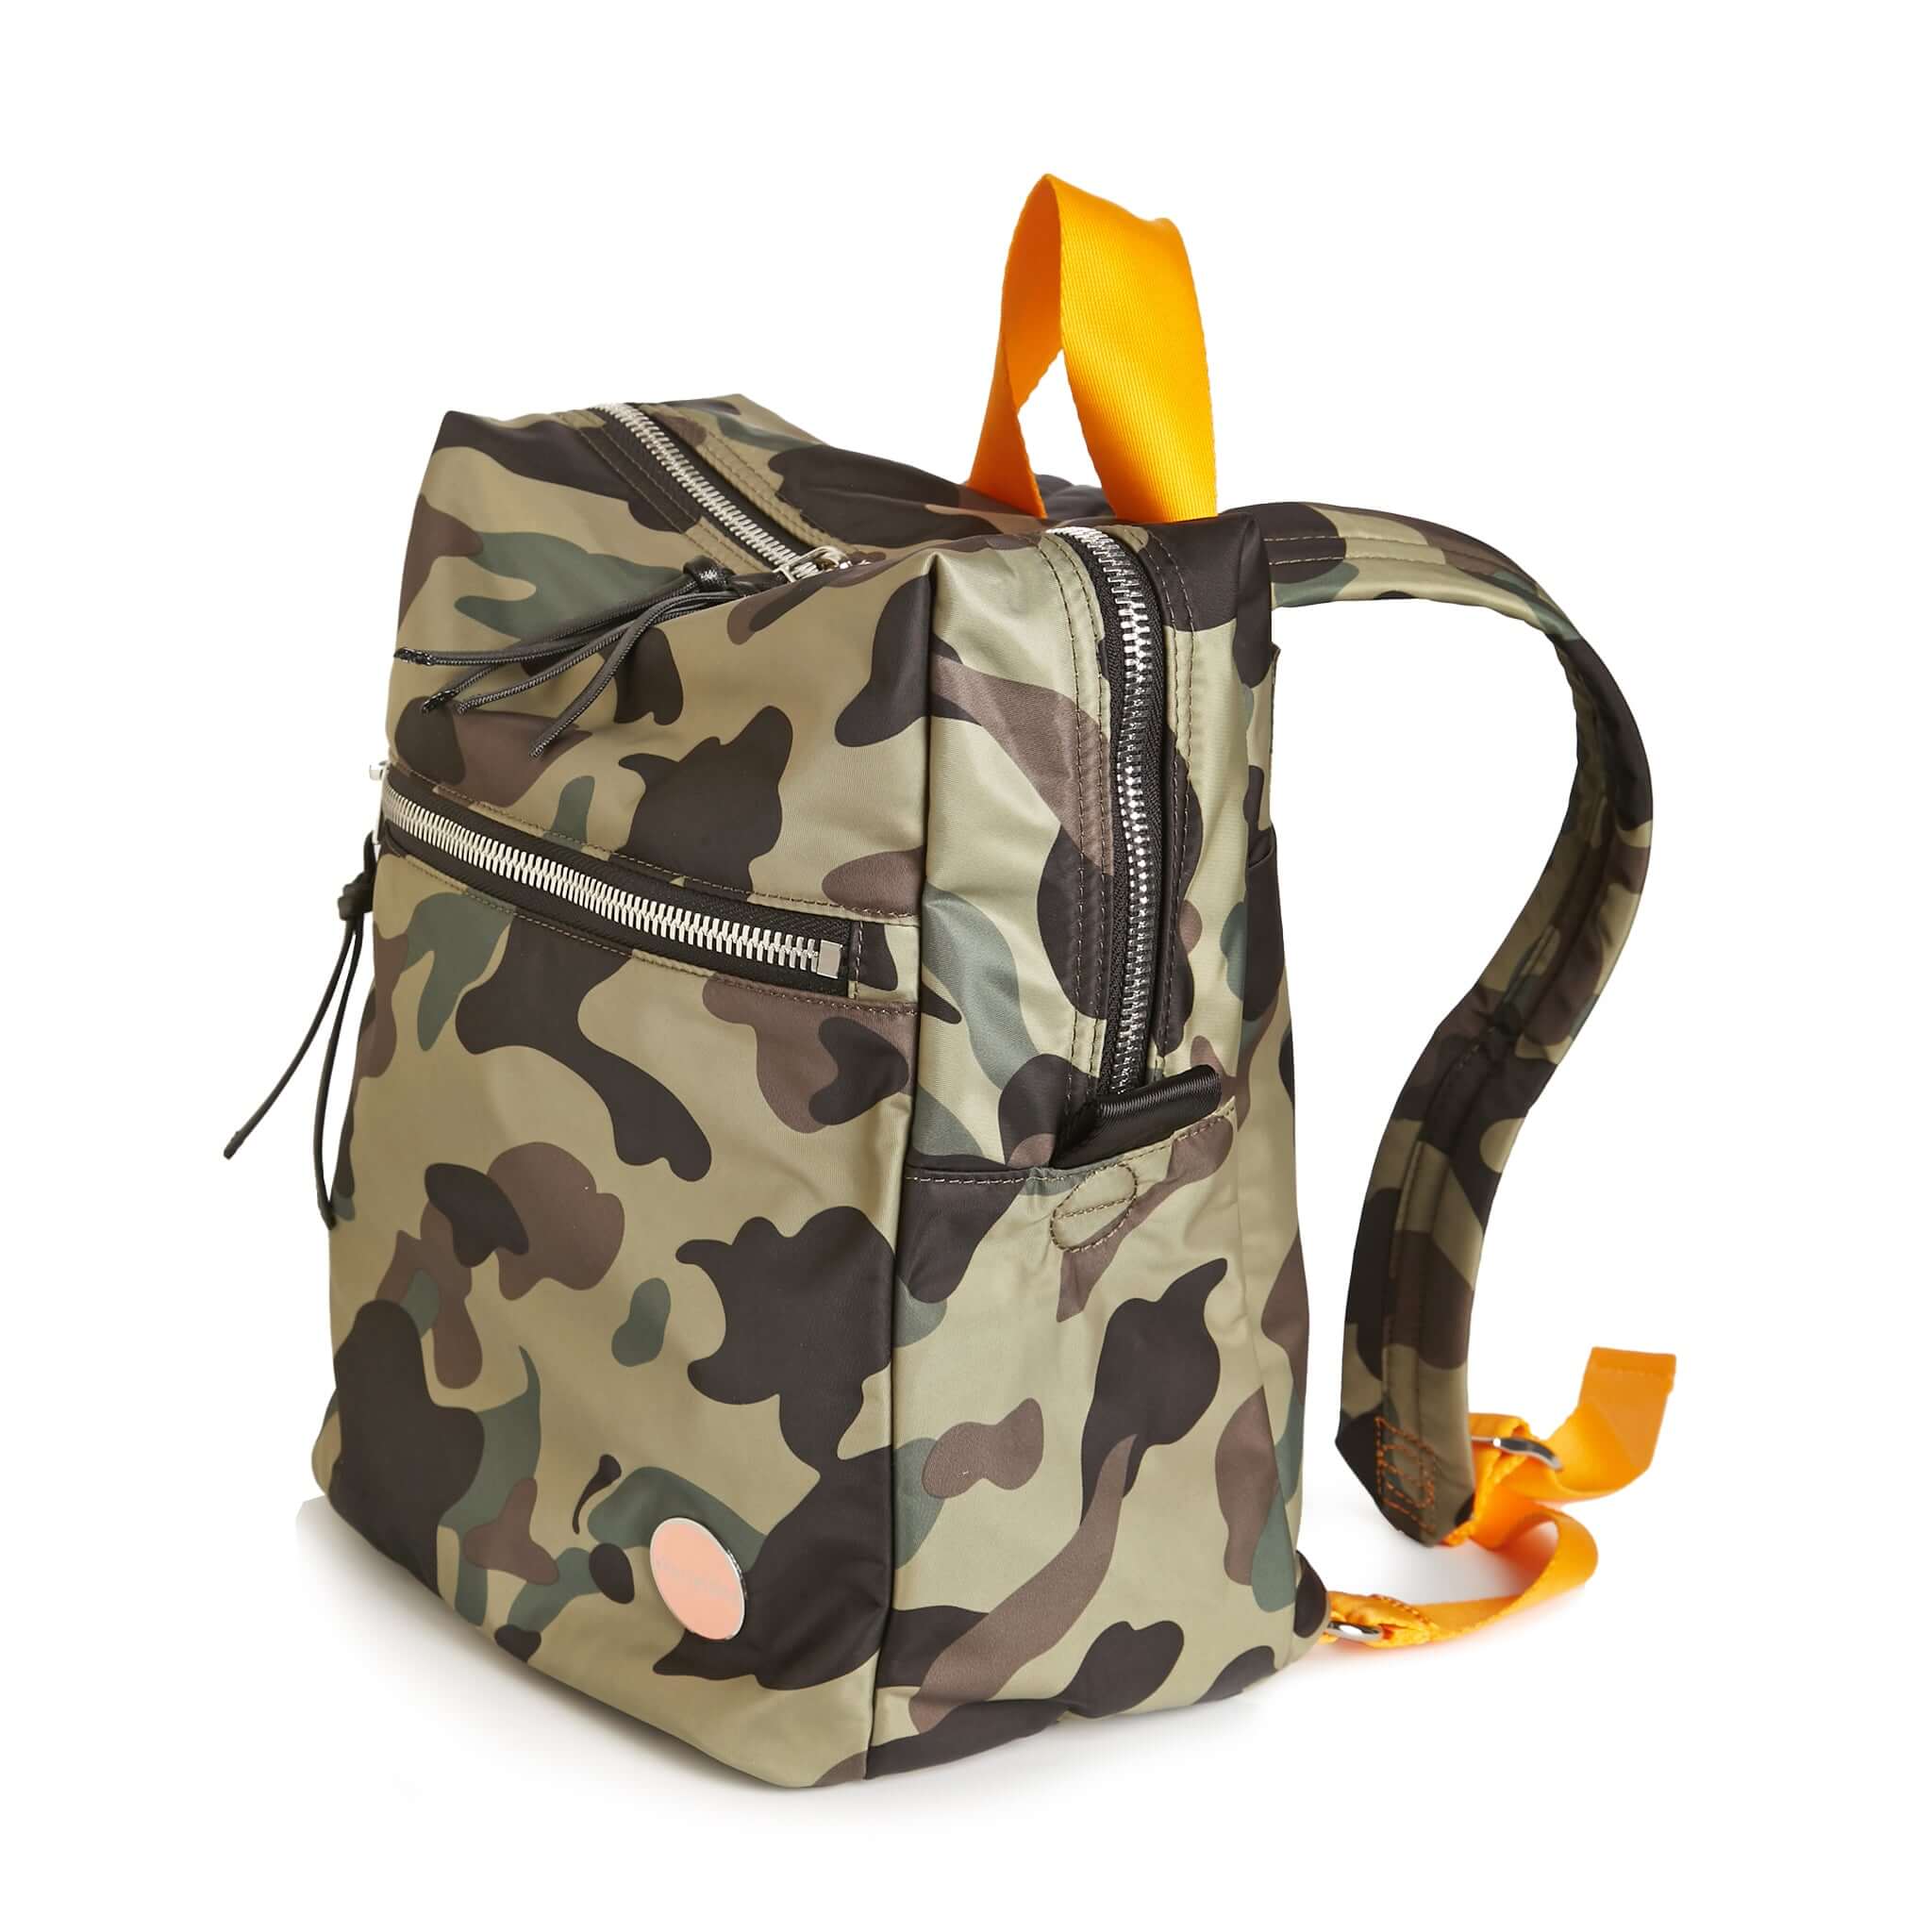 Bape Backpack Pink and Green Bape Waterproof Backpack